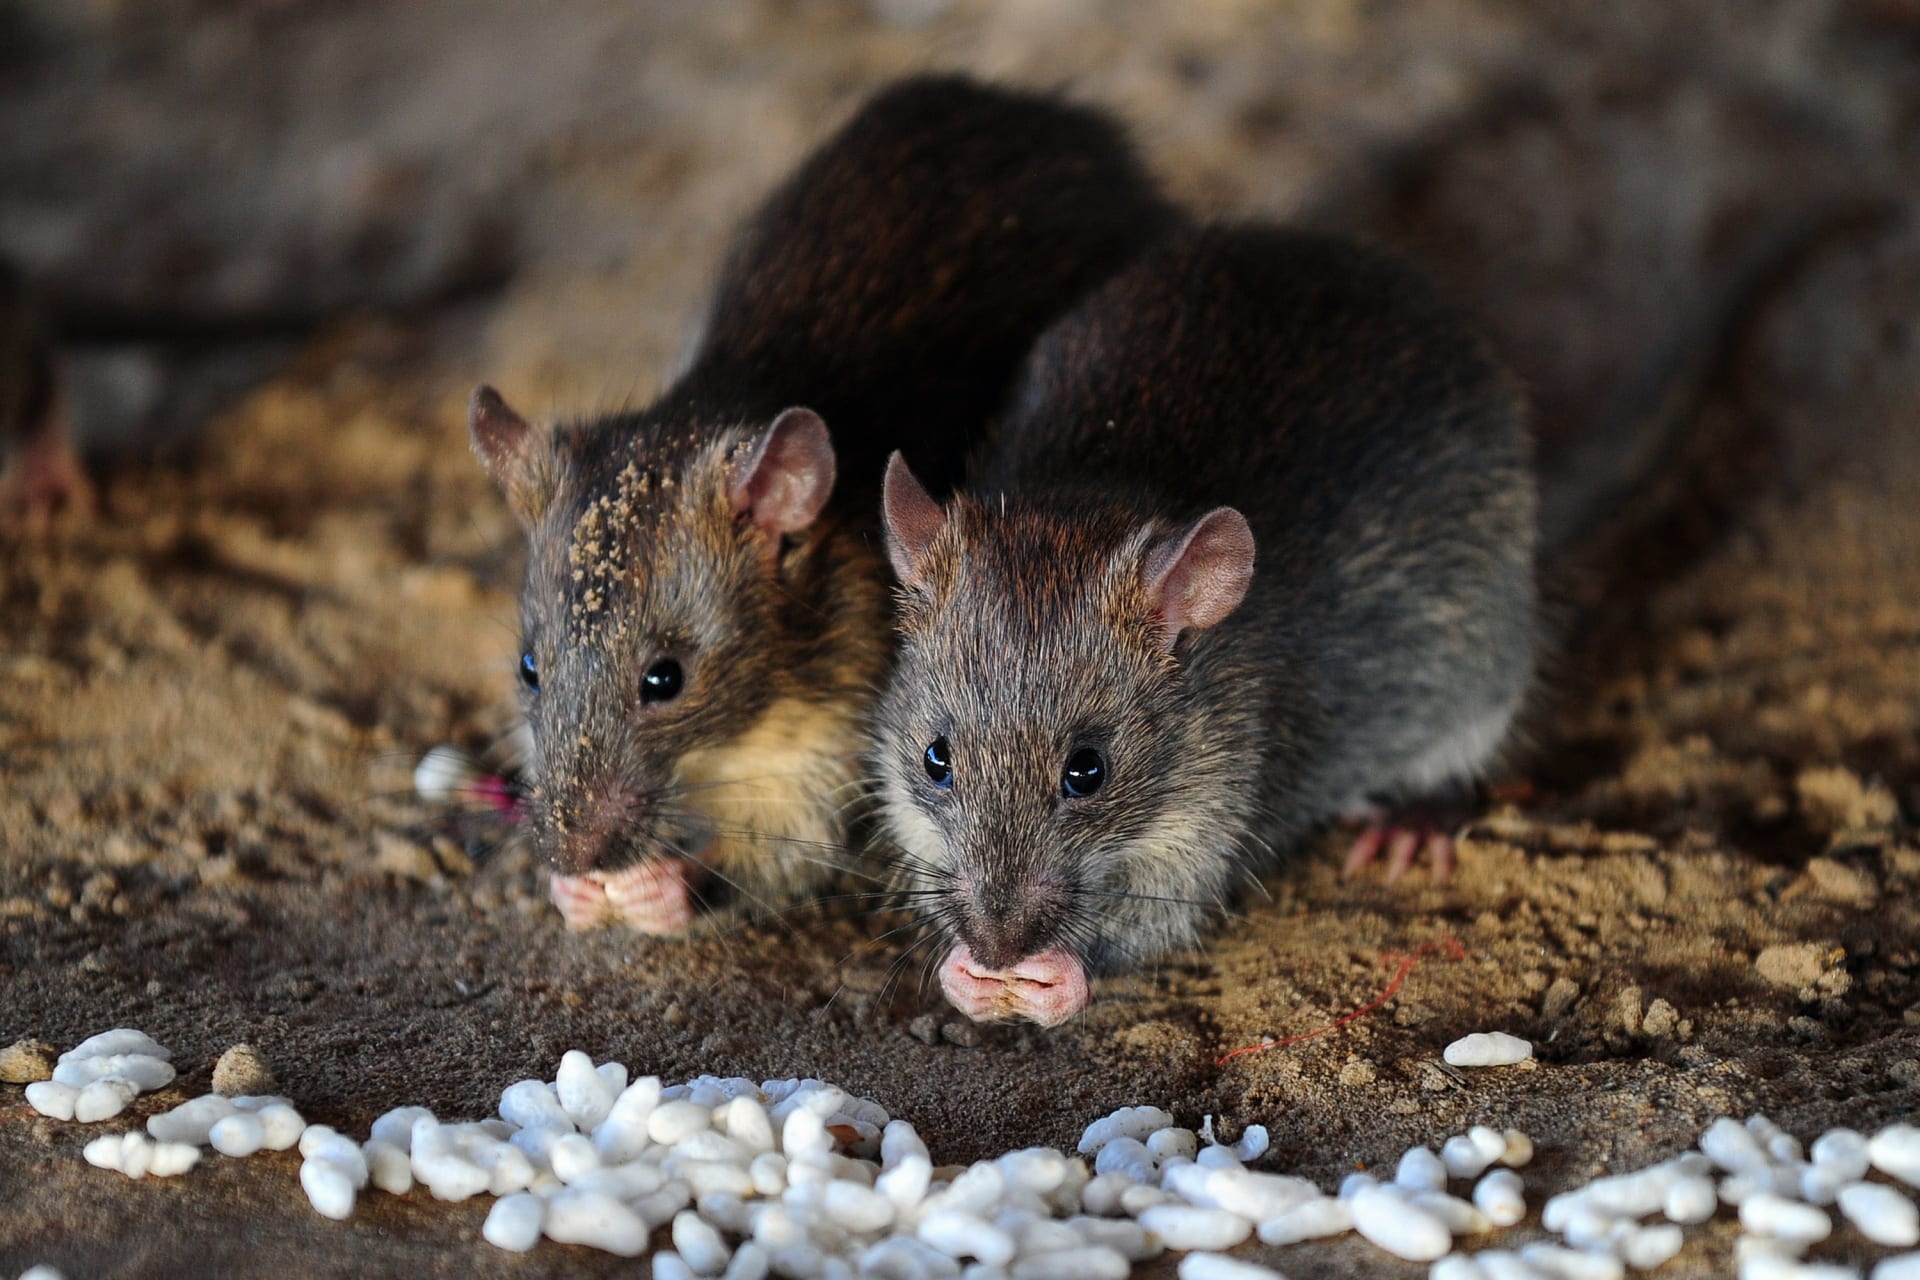 فئران تصيب البشر بالتهاب الكبد.. ولا أحد يعرف كيف يحصل ذلك